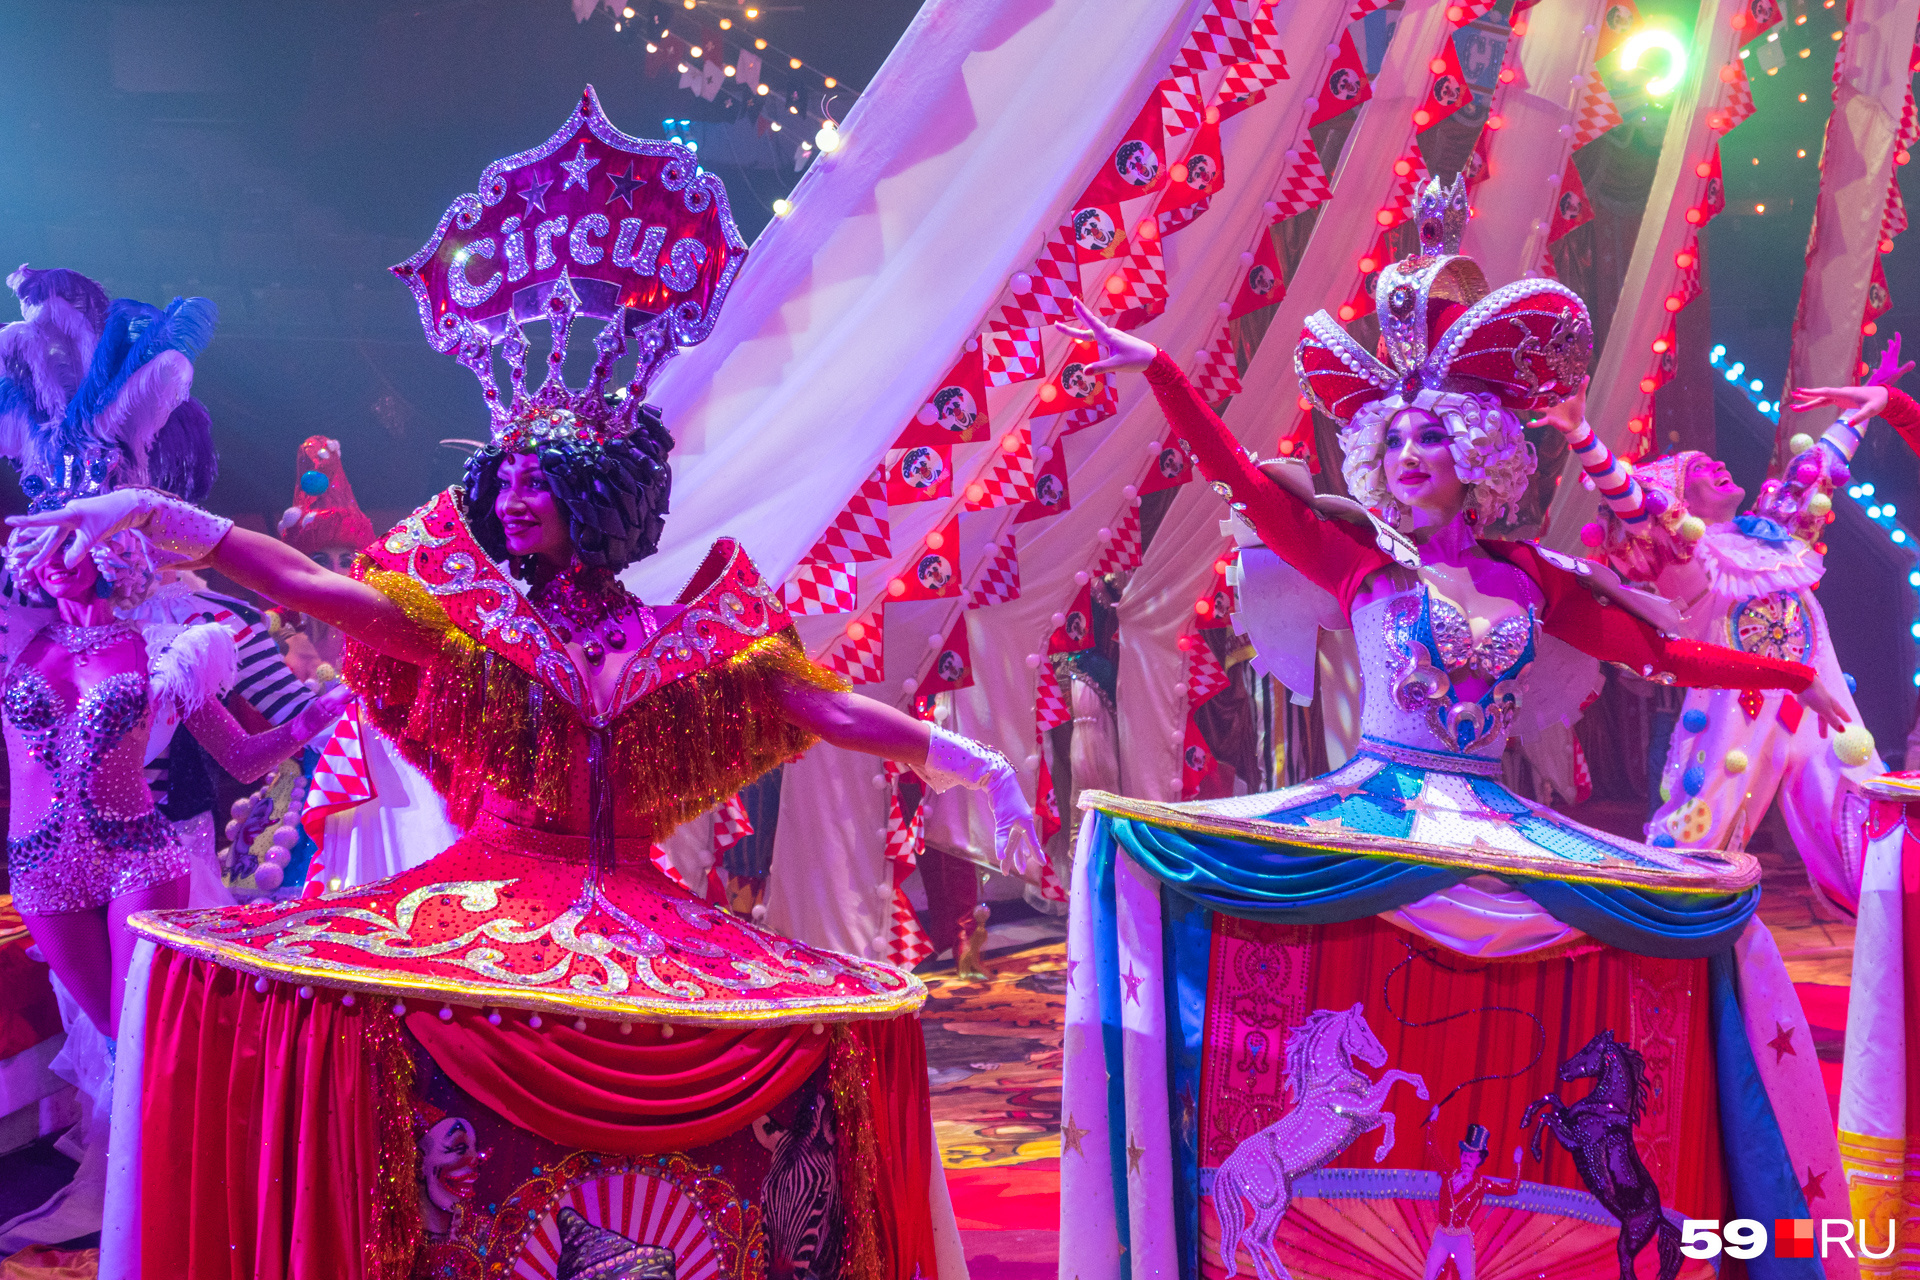 Зрителей приветствуют фрейлины циркового королевства